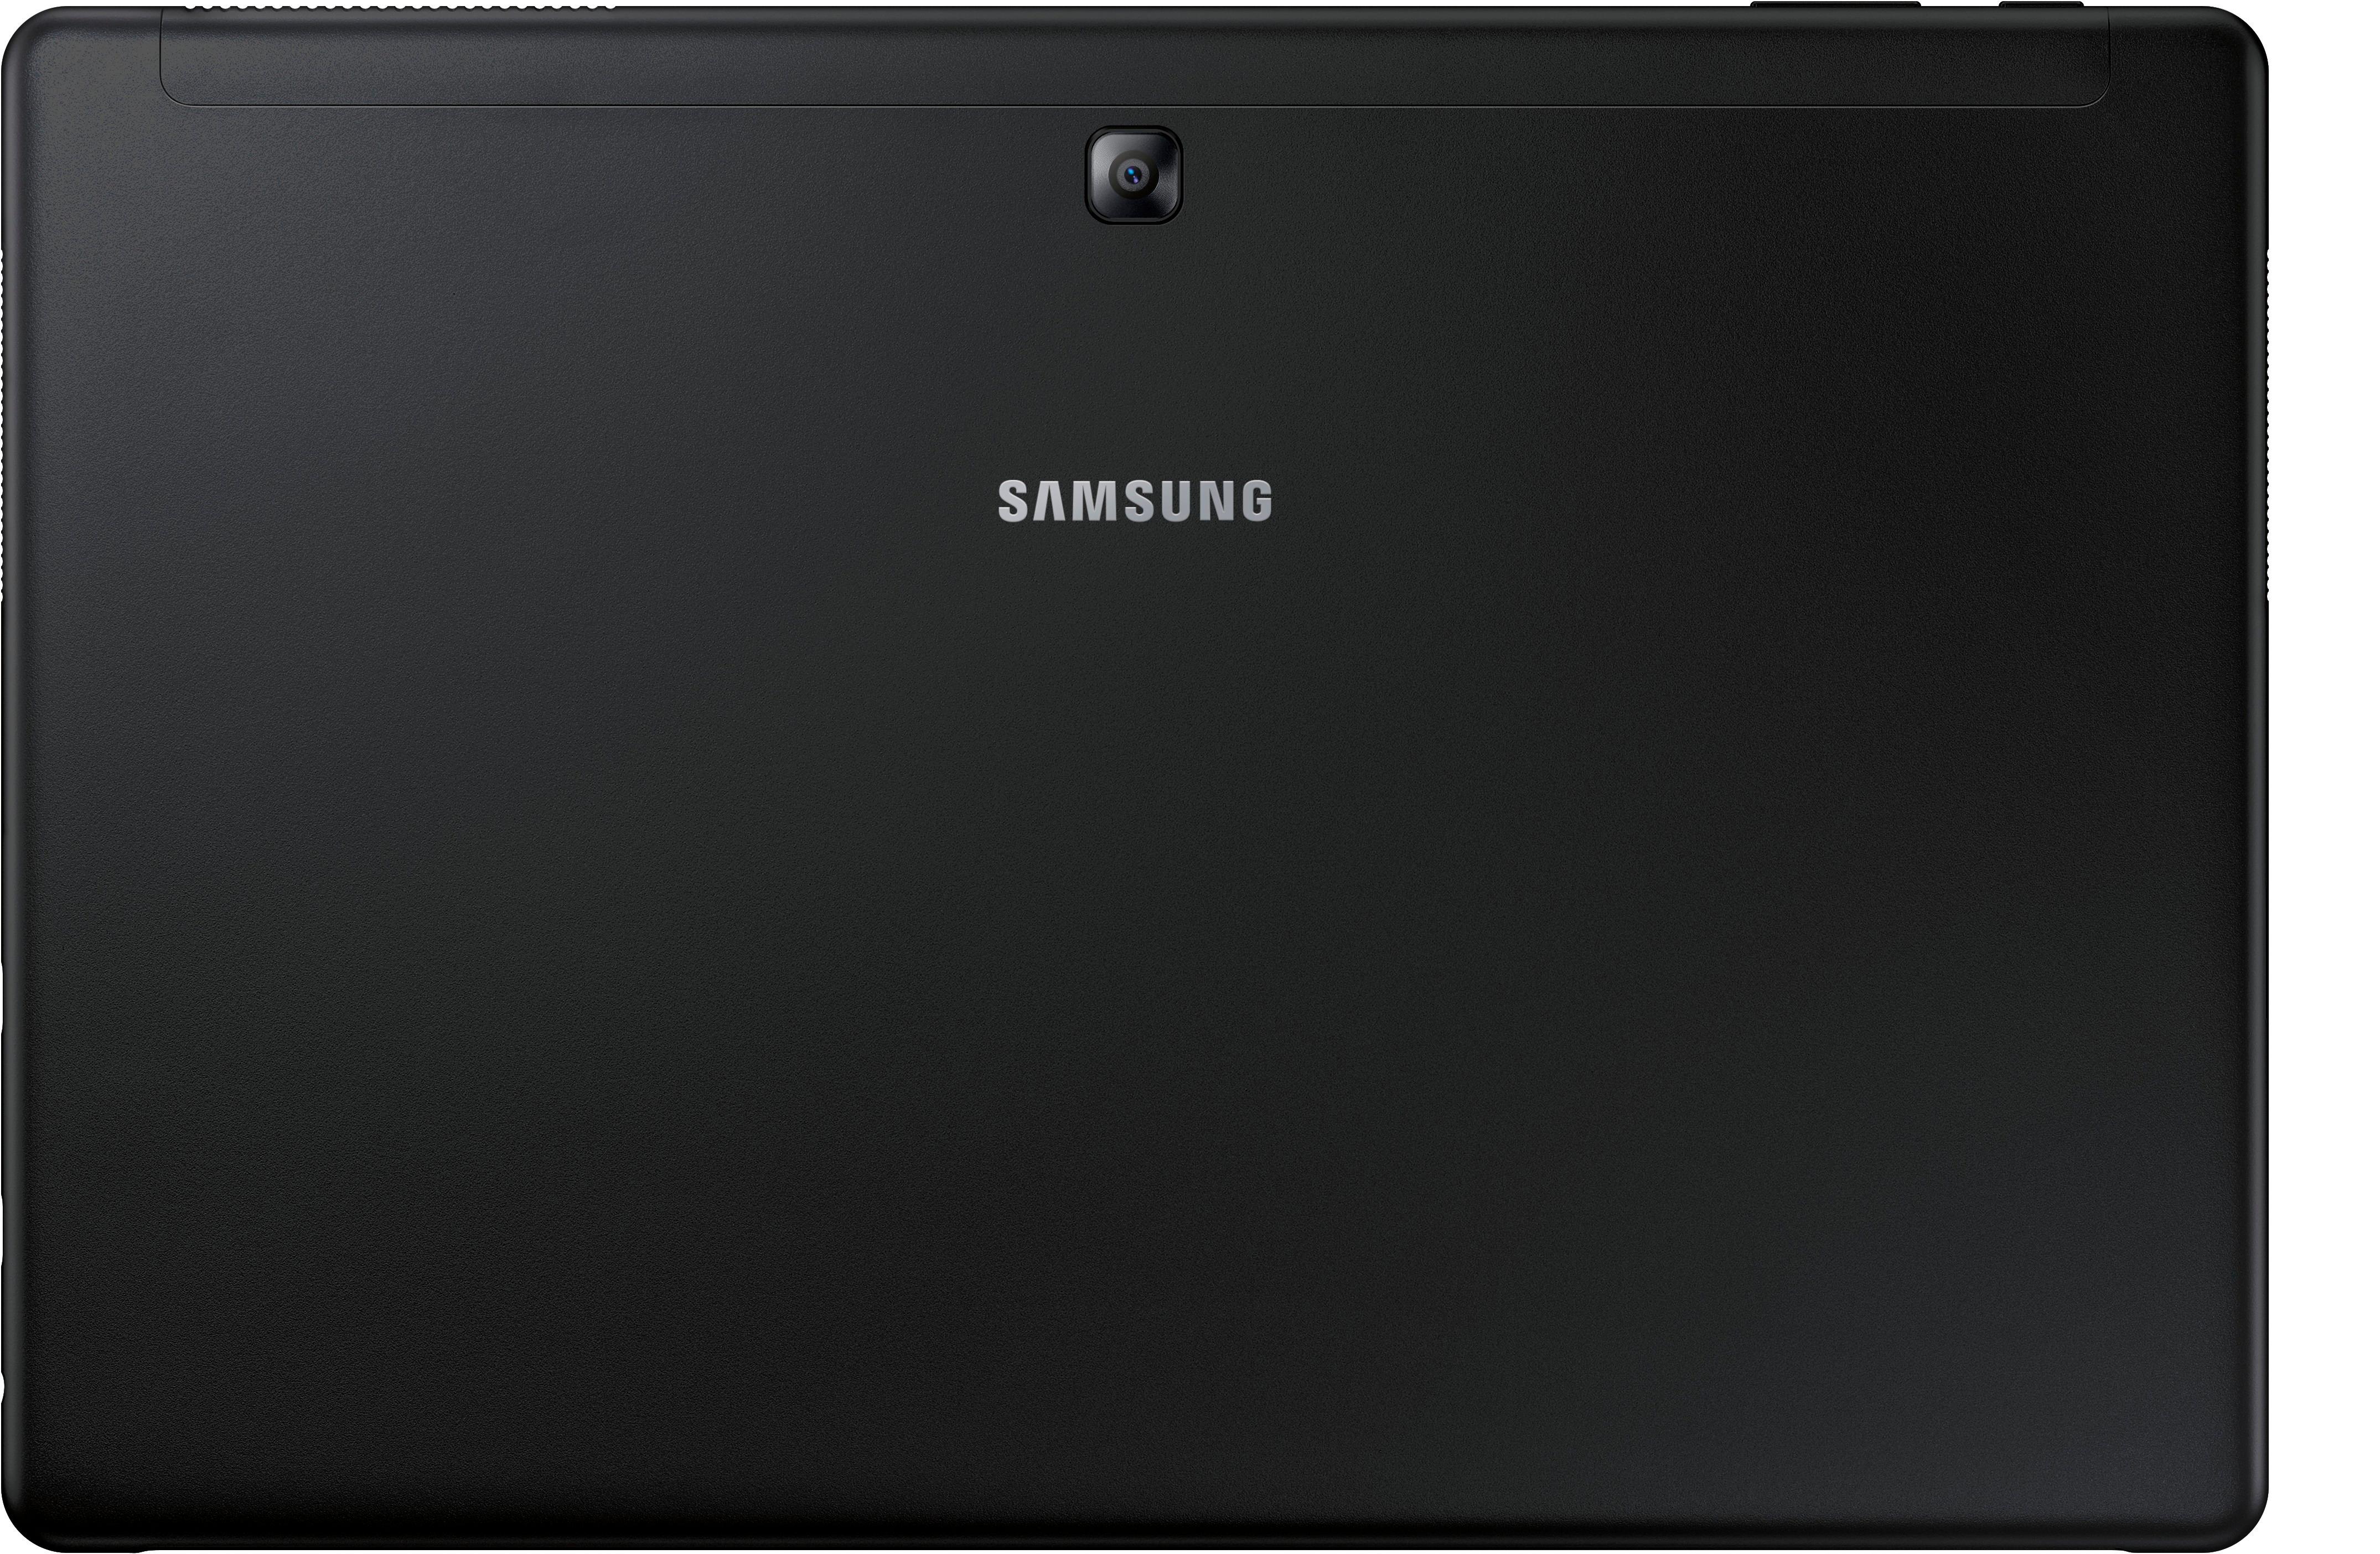 Galaxy Book 12”, 2-in-1 PC, Silver (128GB SSD) Tablets - SM-W720NZKBXAR